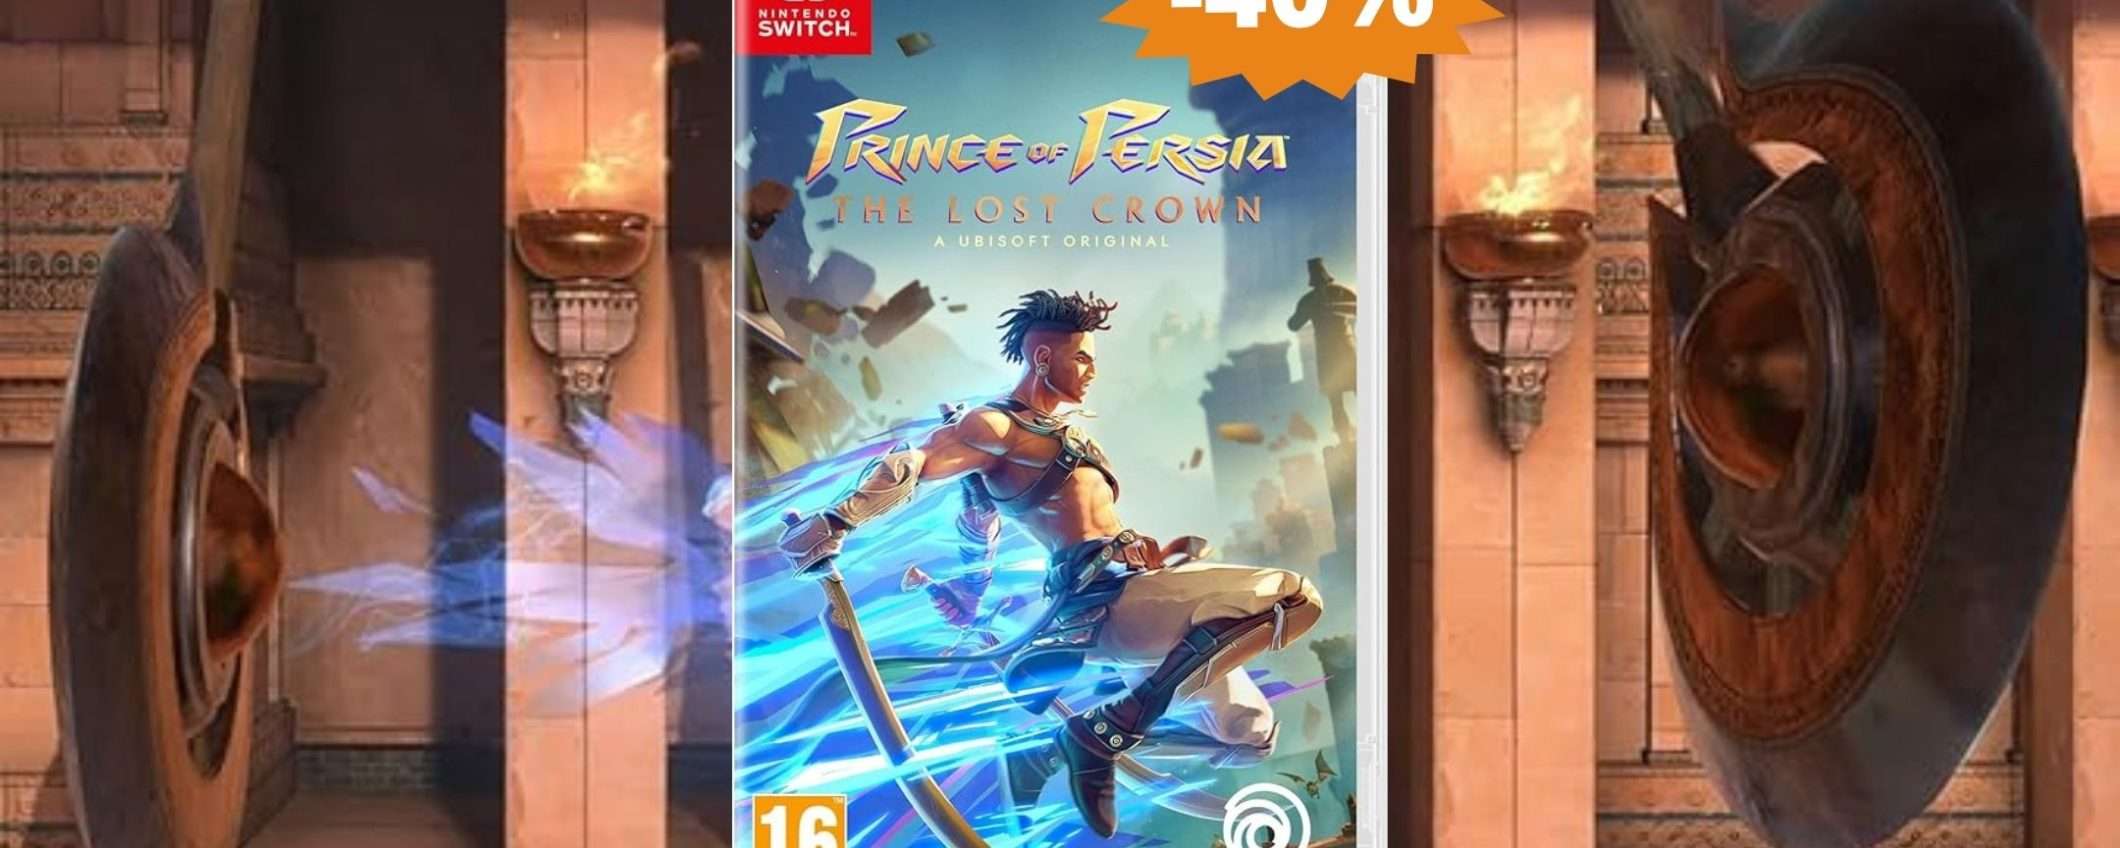 Prince of Persia - The Lost Crown per Switch: MEGA sconto del 40%